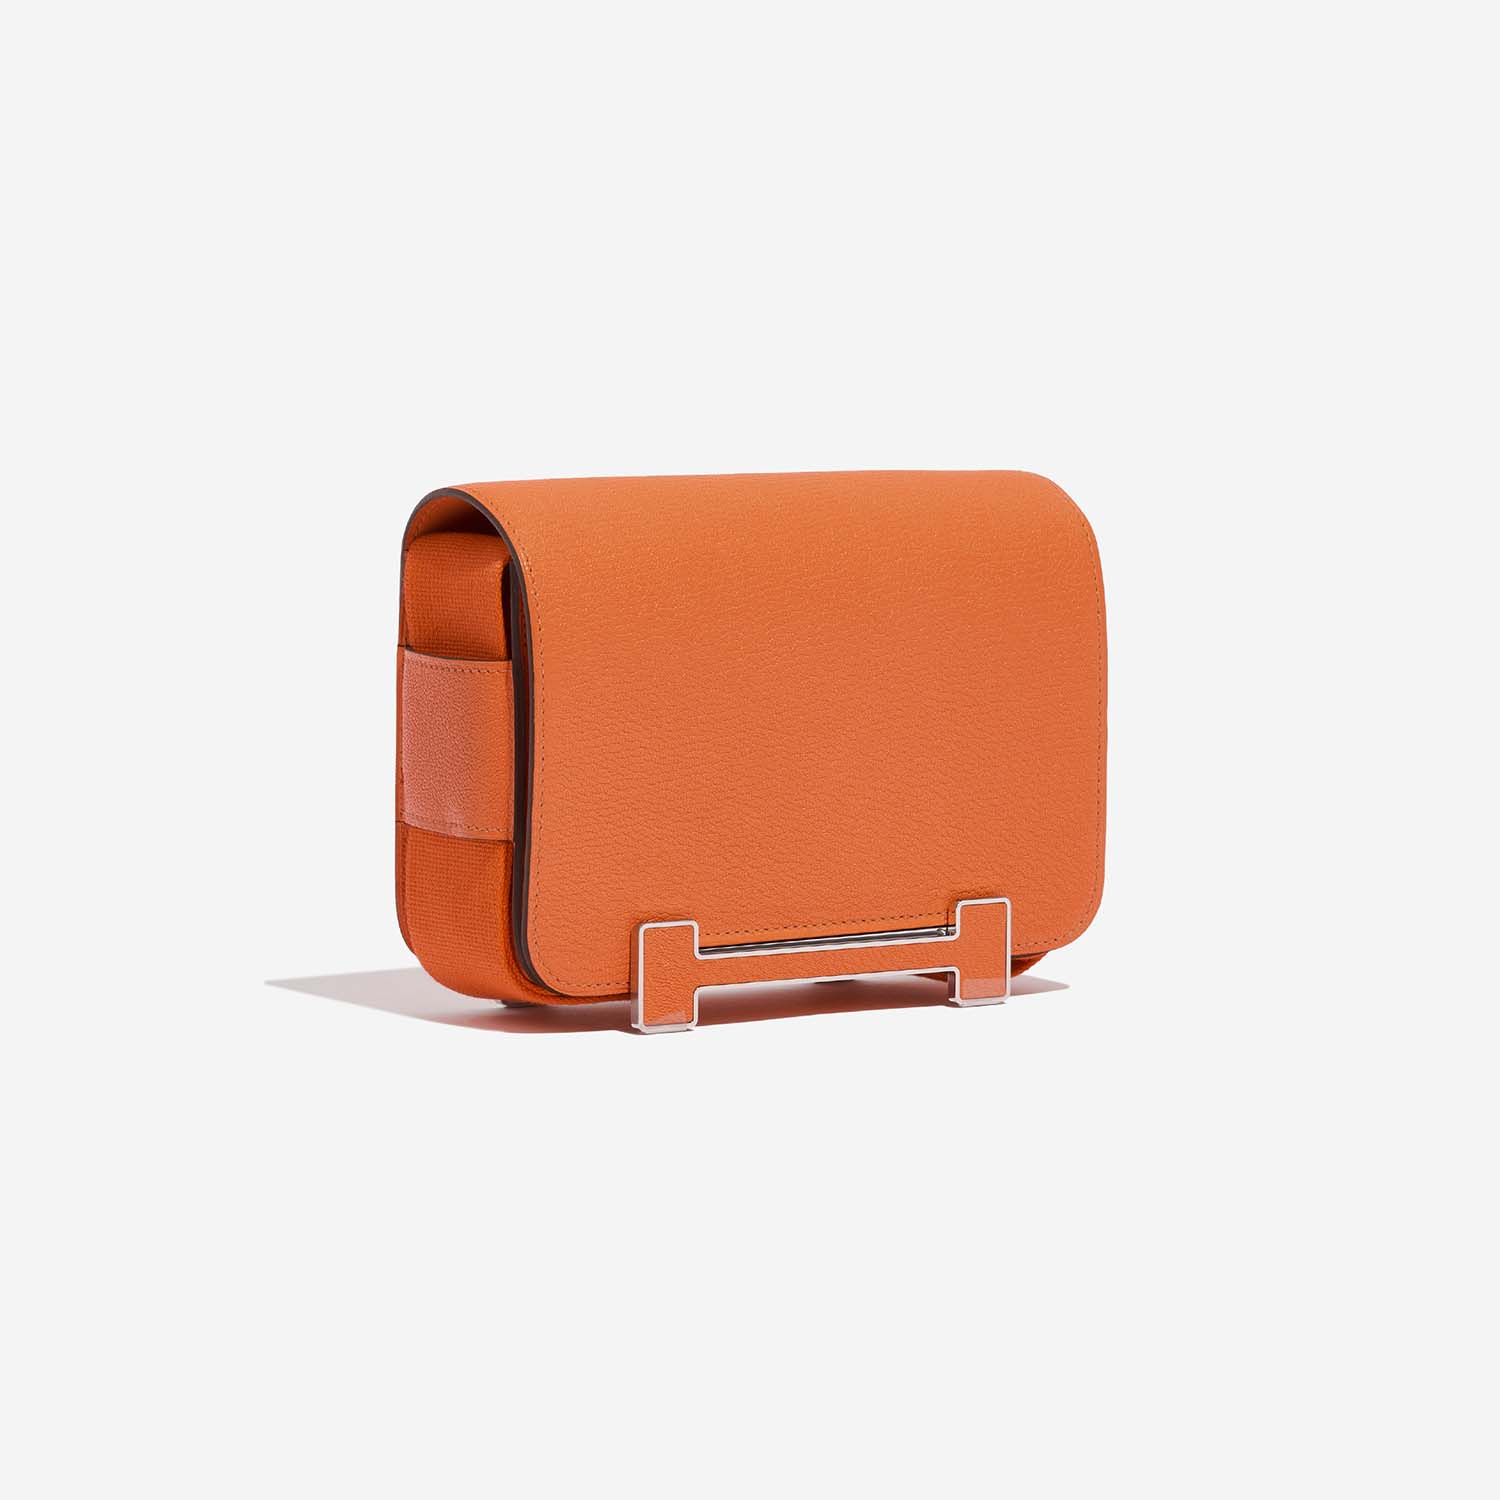 Hermès Geta Orange Side Front | Verkaufen Sie Ihre Designer-Tasche auf Saclab.com